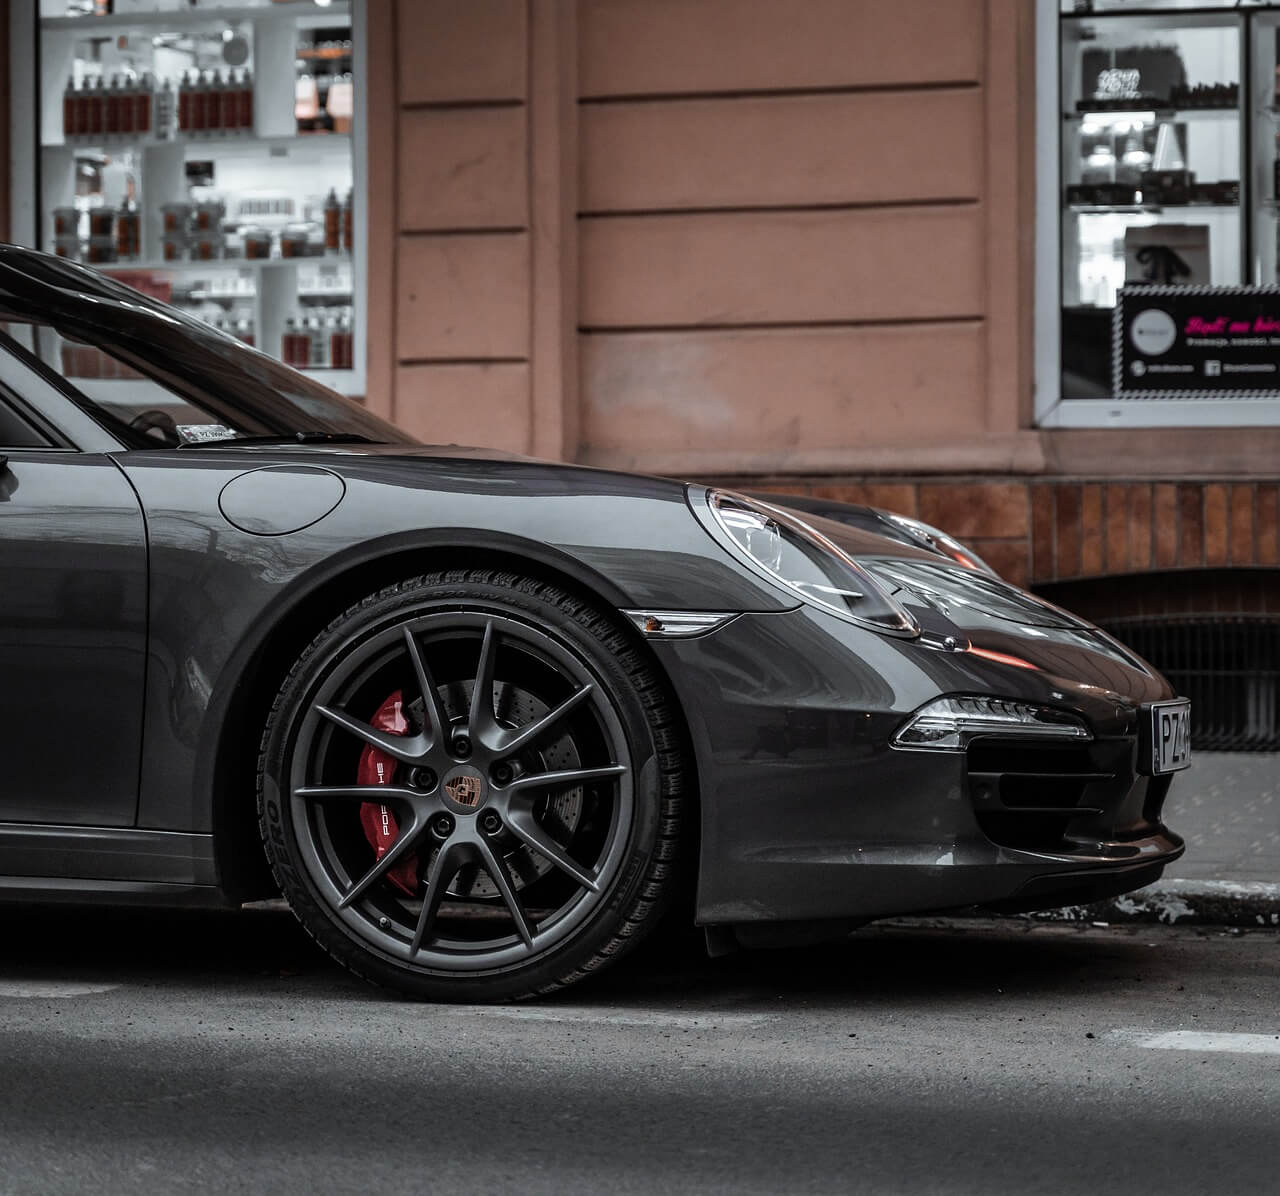 Parked metallic Porsche